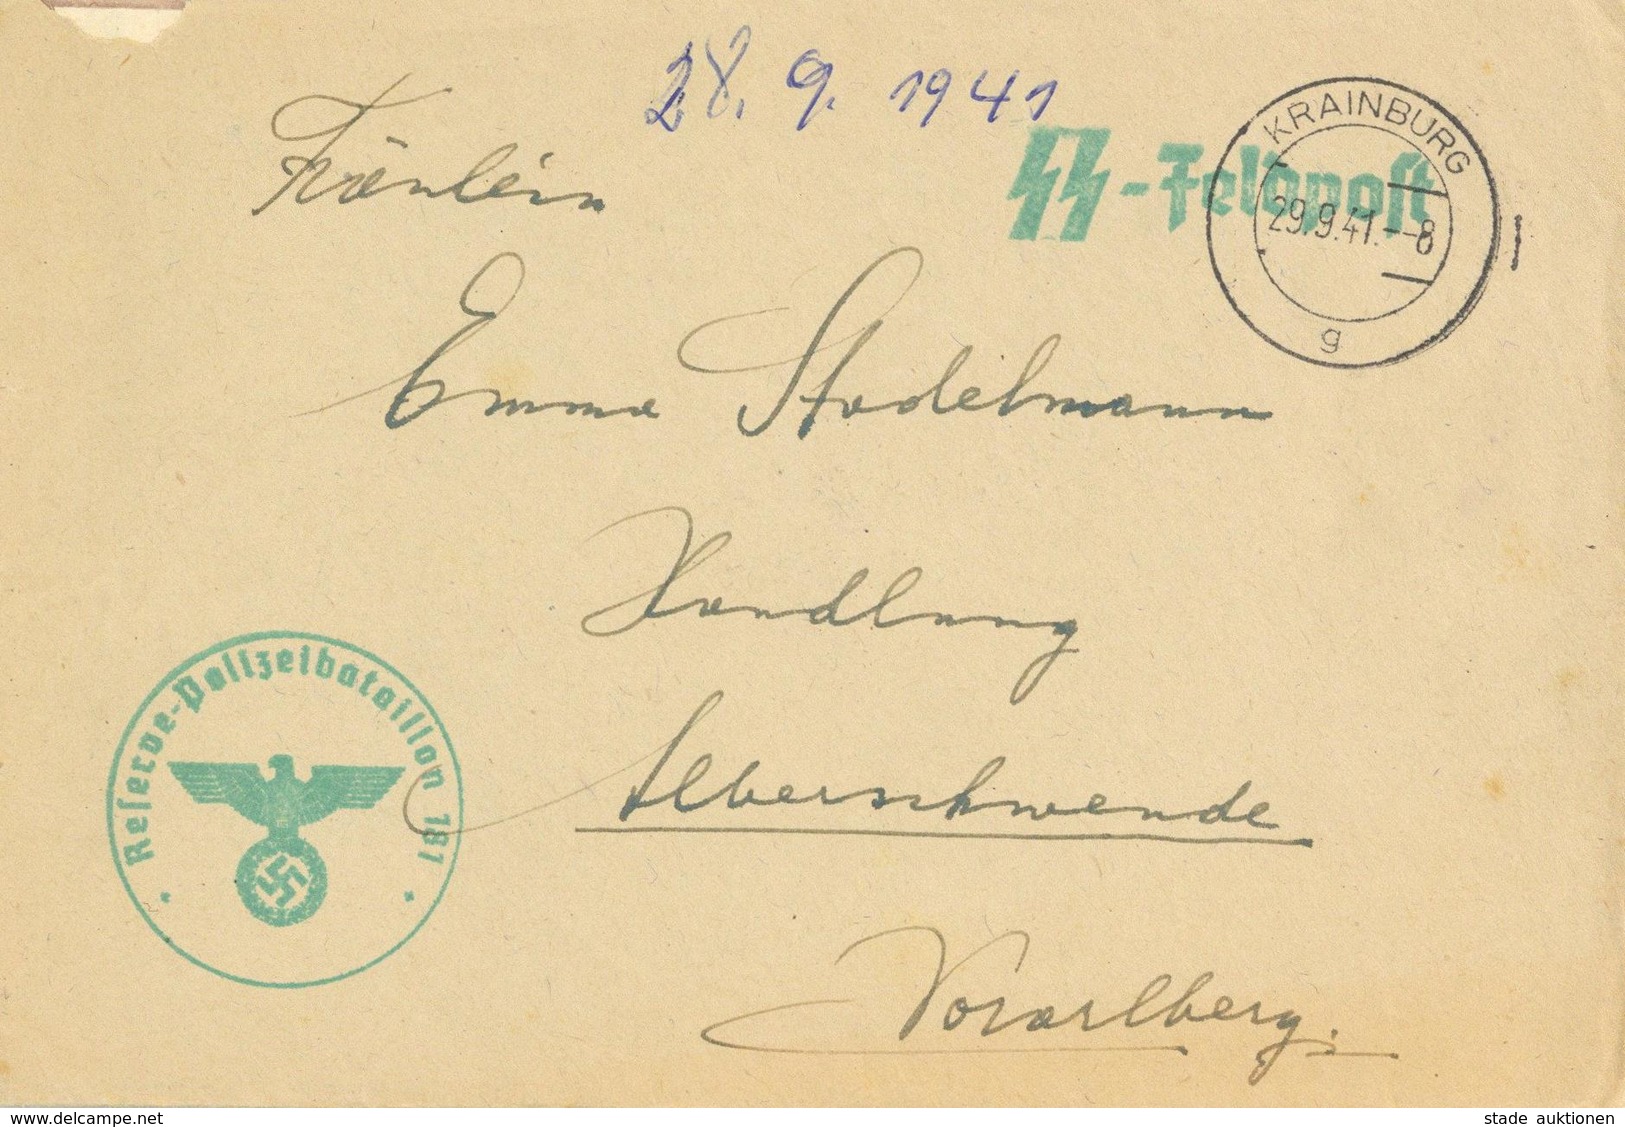 SS Feldpost Krainburg Slowenien Reserve Polizeibatallion Brief Mit Inhalt I-II - War 1939-45